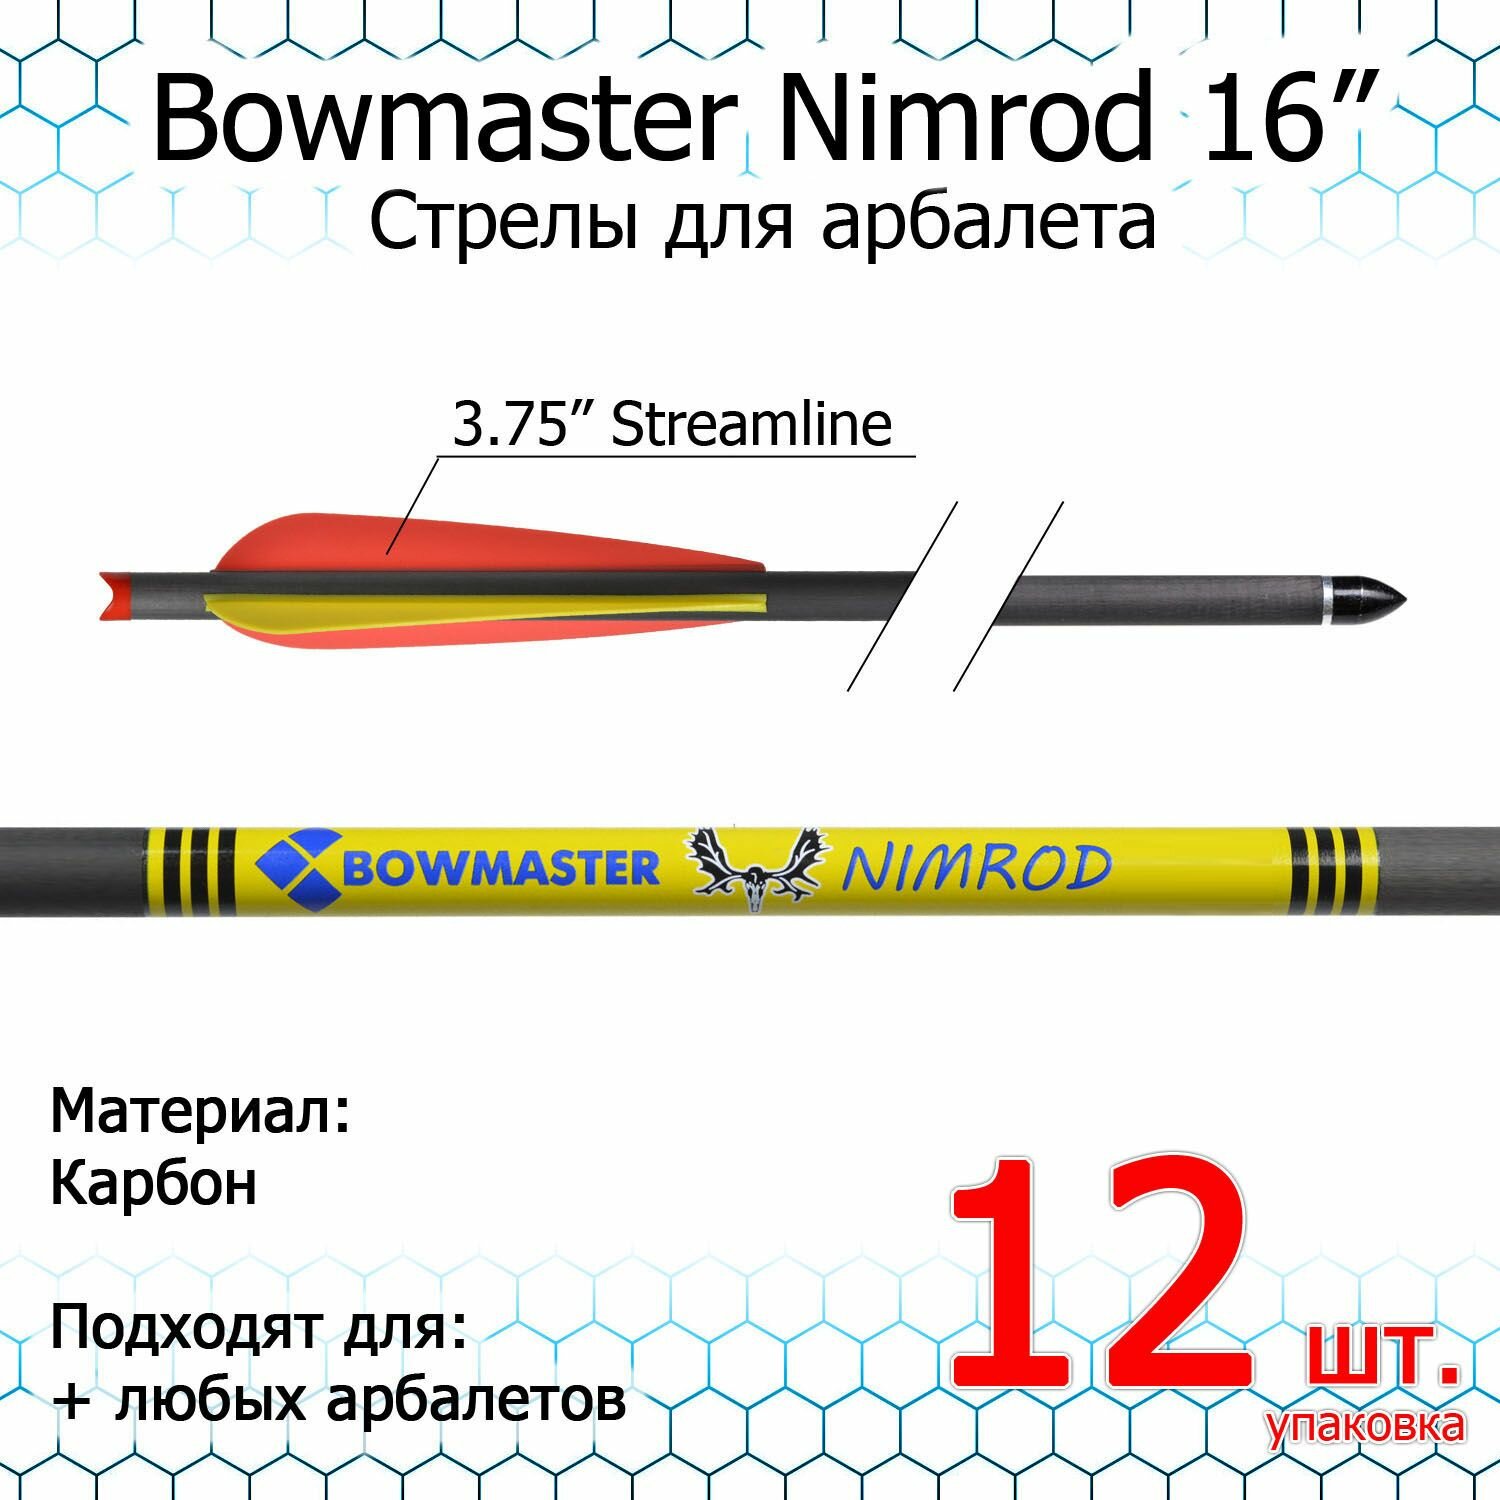 Стрела для арбалета Bowmaster - Nimrod 16 дюймов карбоновые 11/32 оперение 3.75" Streamline (12 шт.)